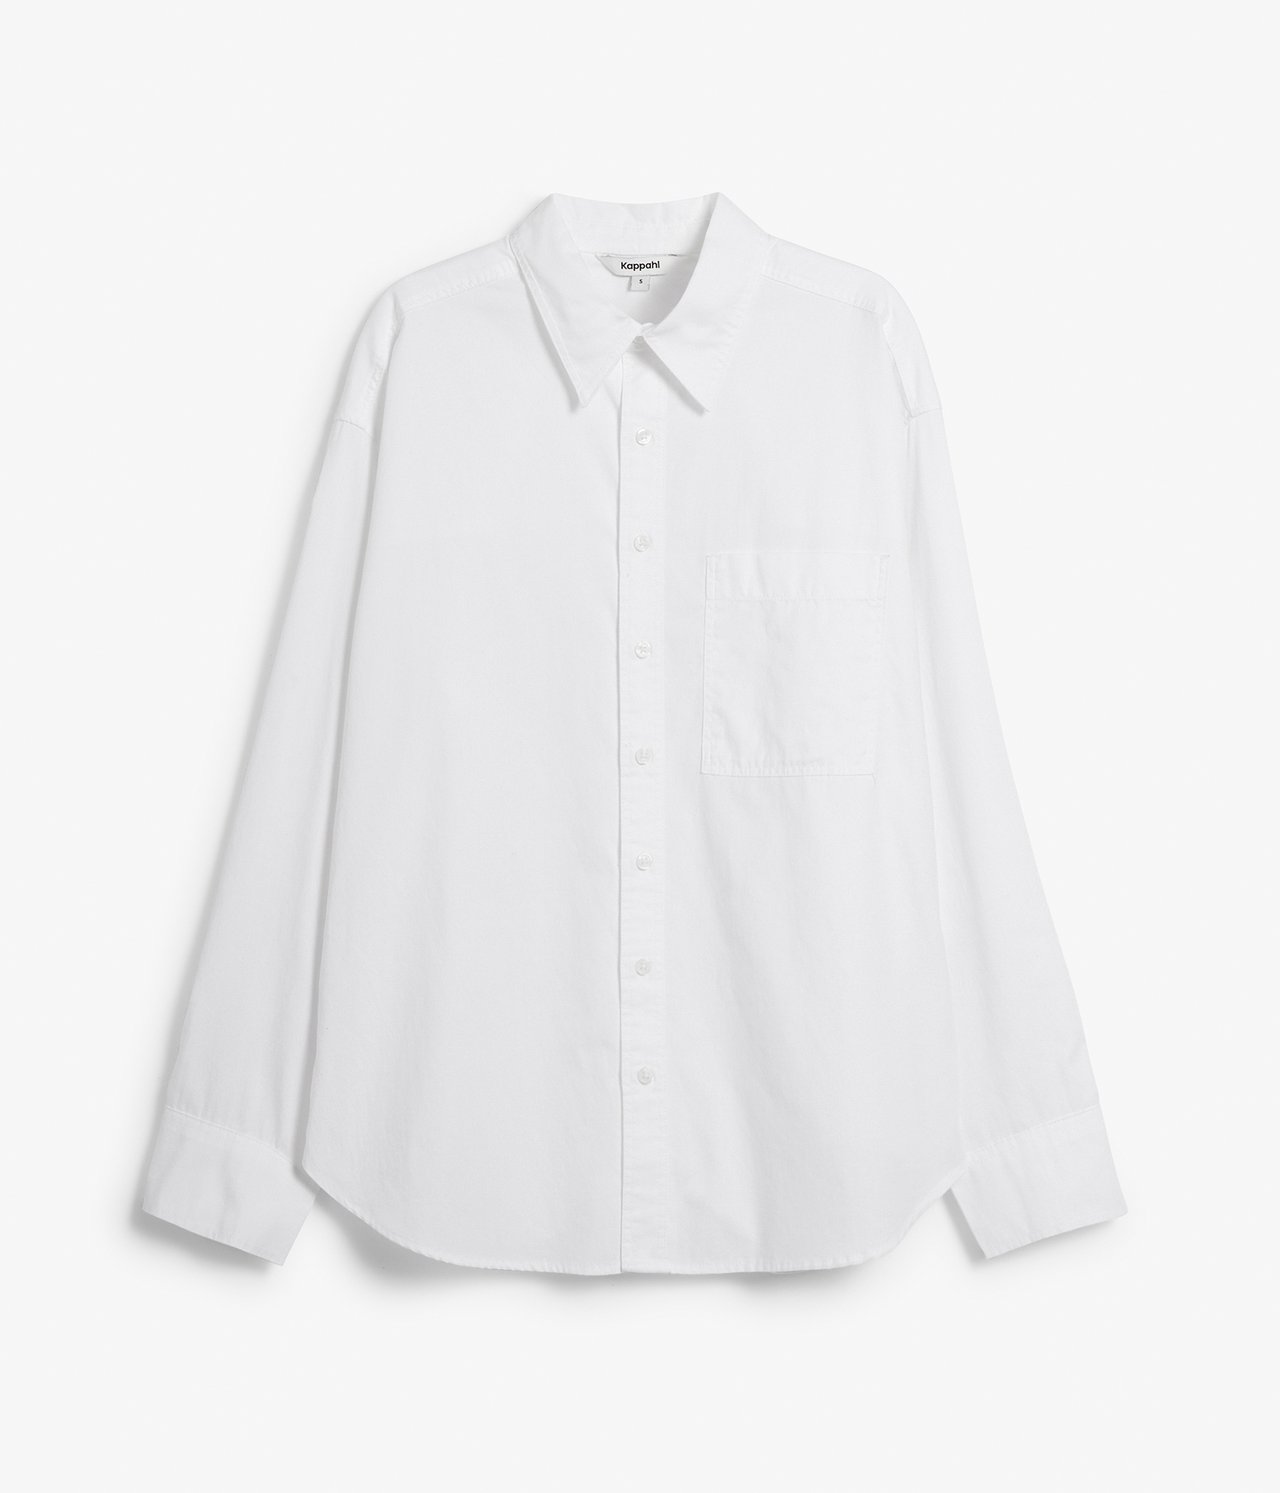 Skjorte med knepping i sidene Hvit - null - 6